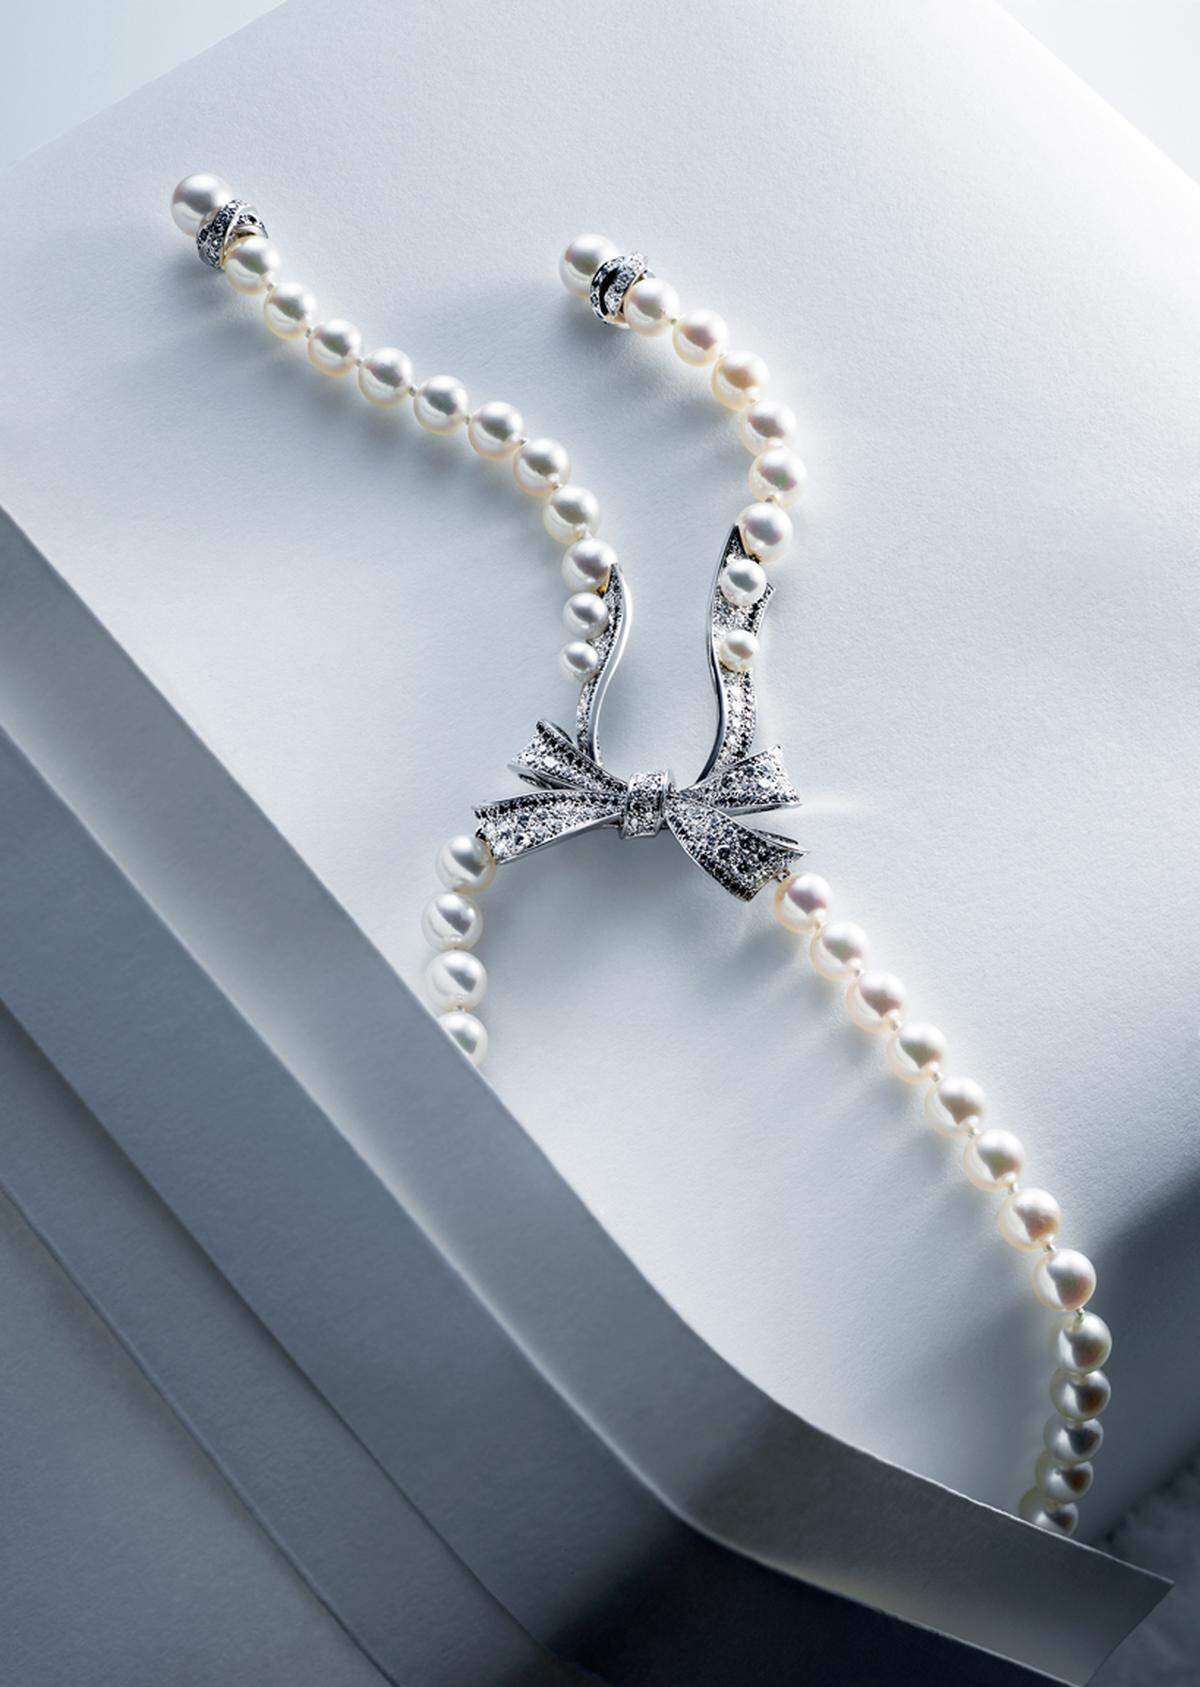 Bei den Outfits der Grande Dame der Mode durften natürlich auch Perlen nicht fehlen. Eine Hommage an Coco Chanel ist diese Perlenkette mit Schleifenverzierung.